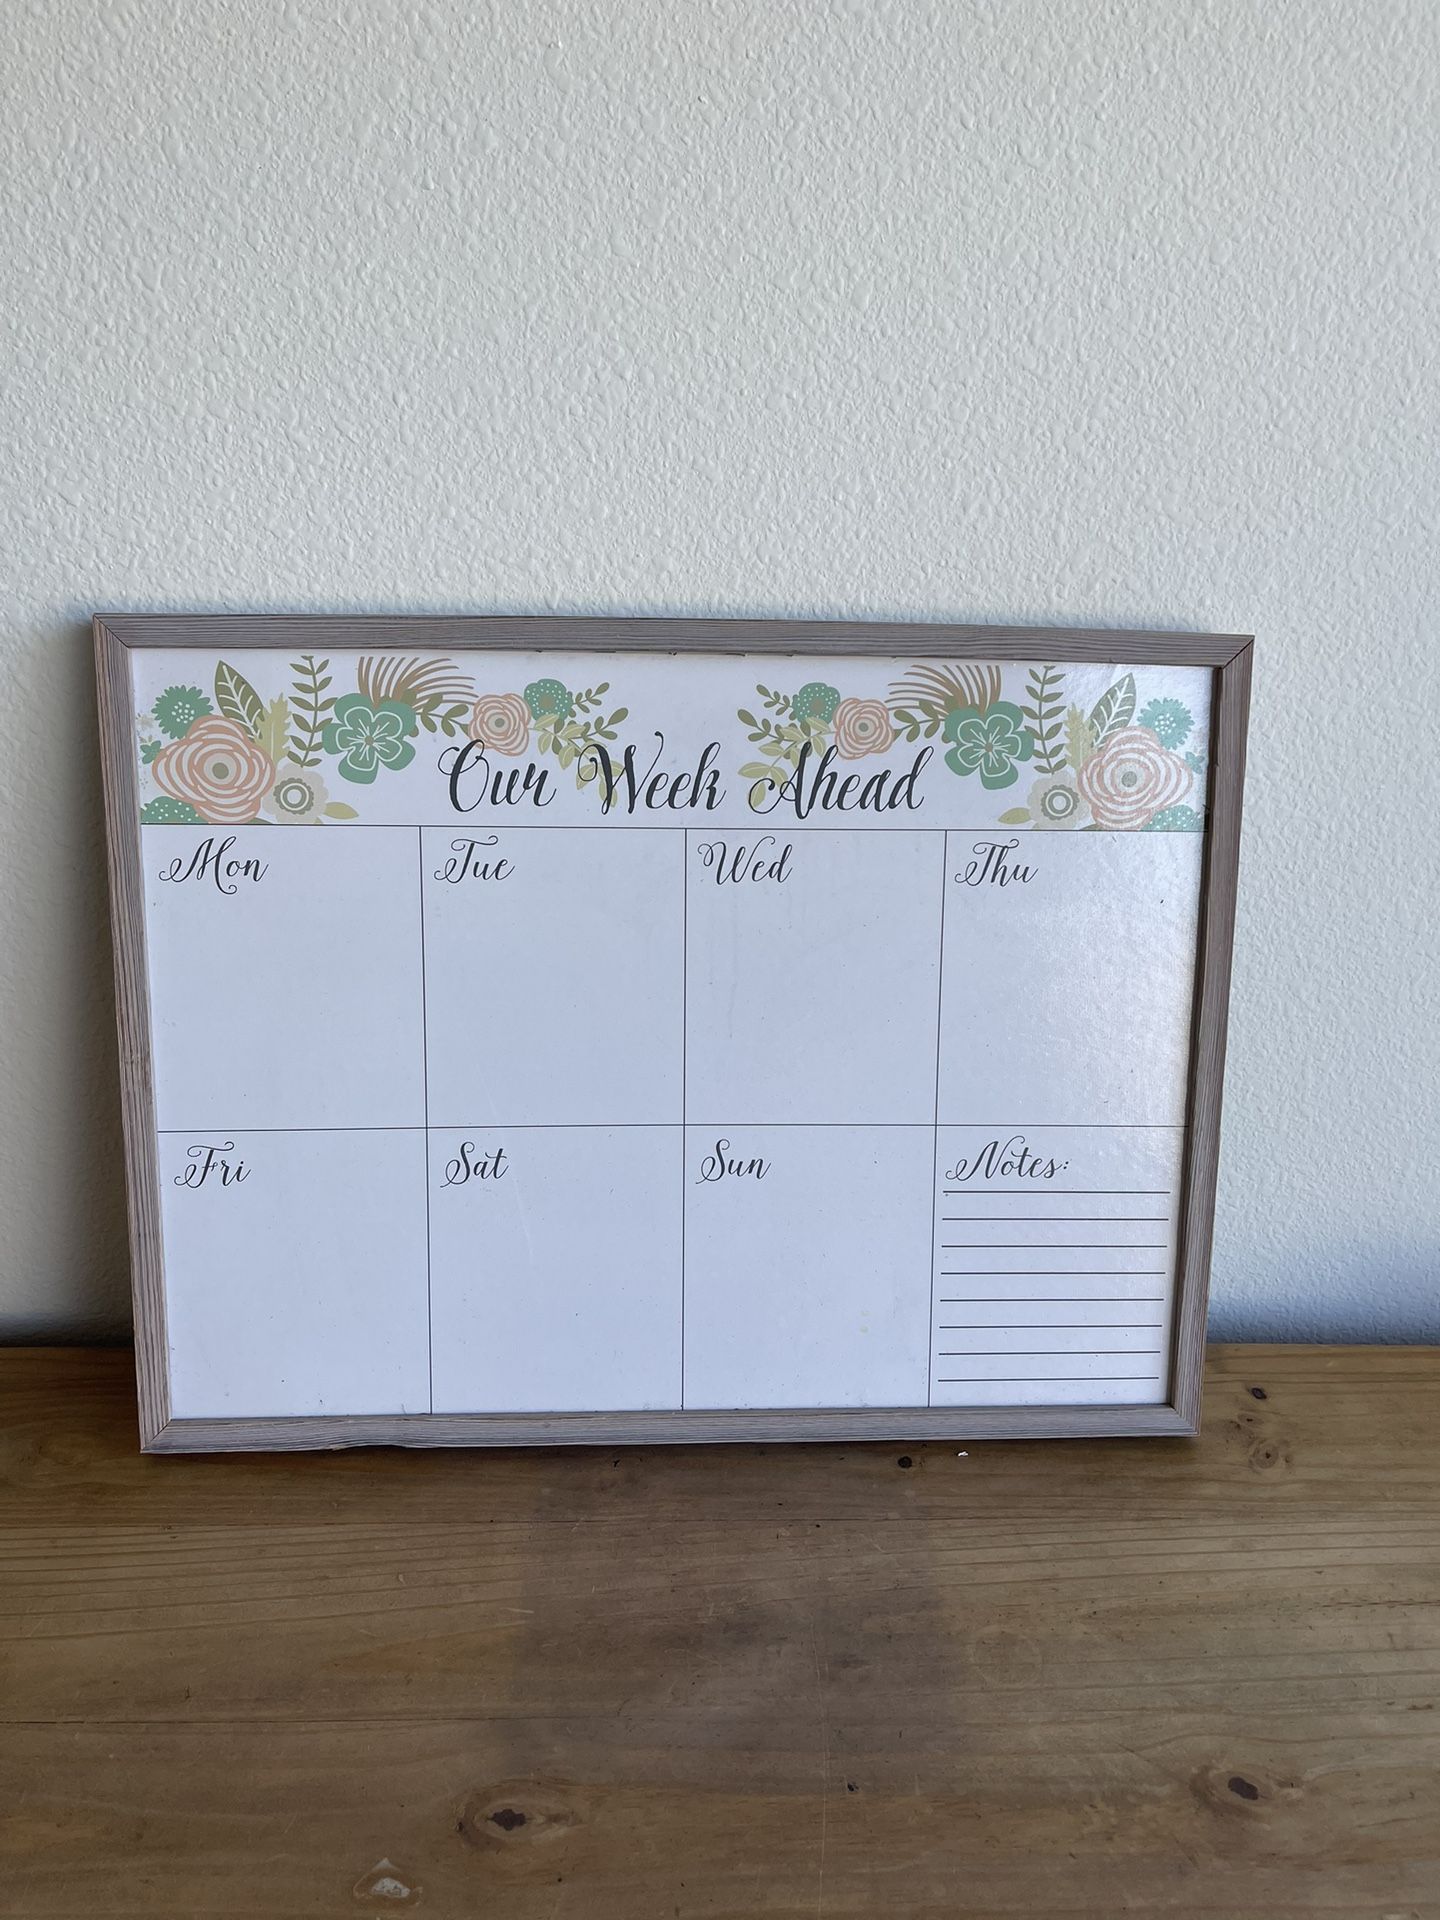 Cute Calendar For Office!